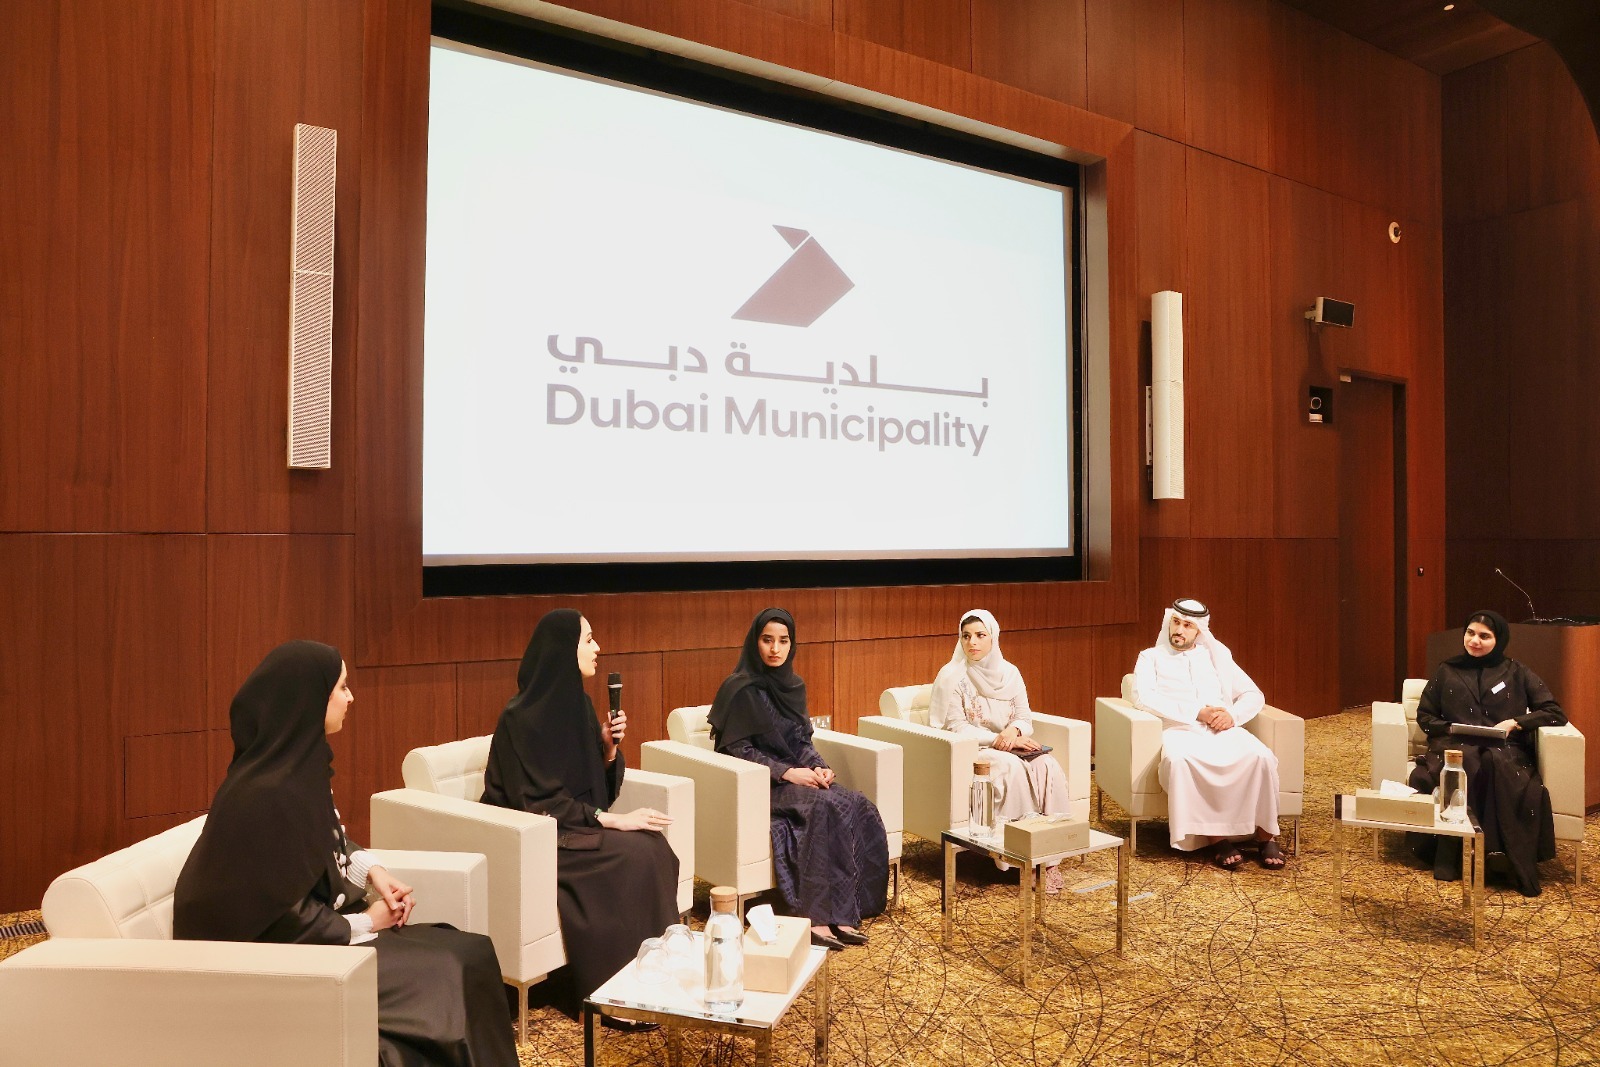 بلدية دبي تنظم الملتقى الأول لاتحاد مجالس الشباب تحت عنوان "معا في الاستدامة"
